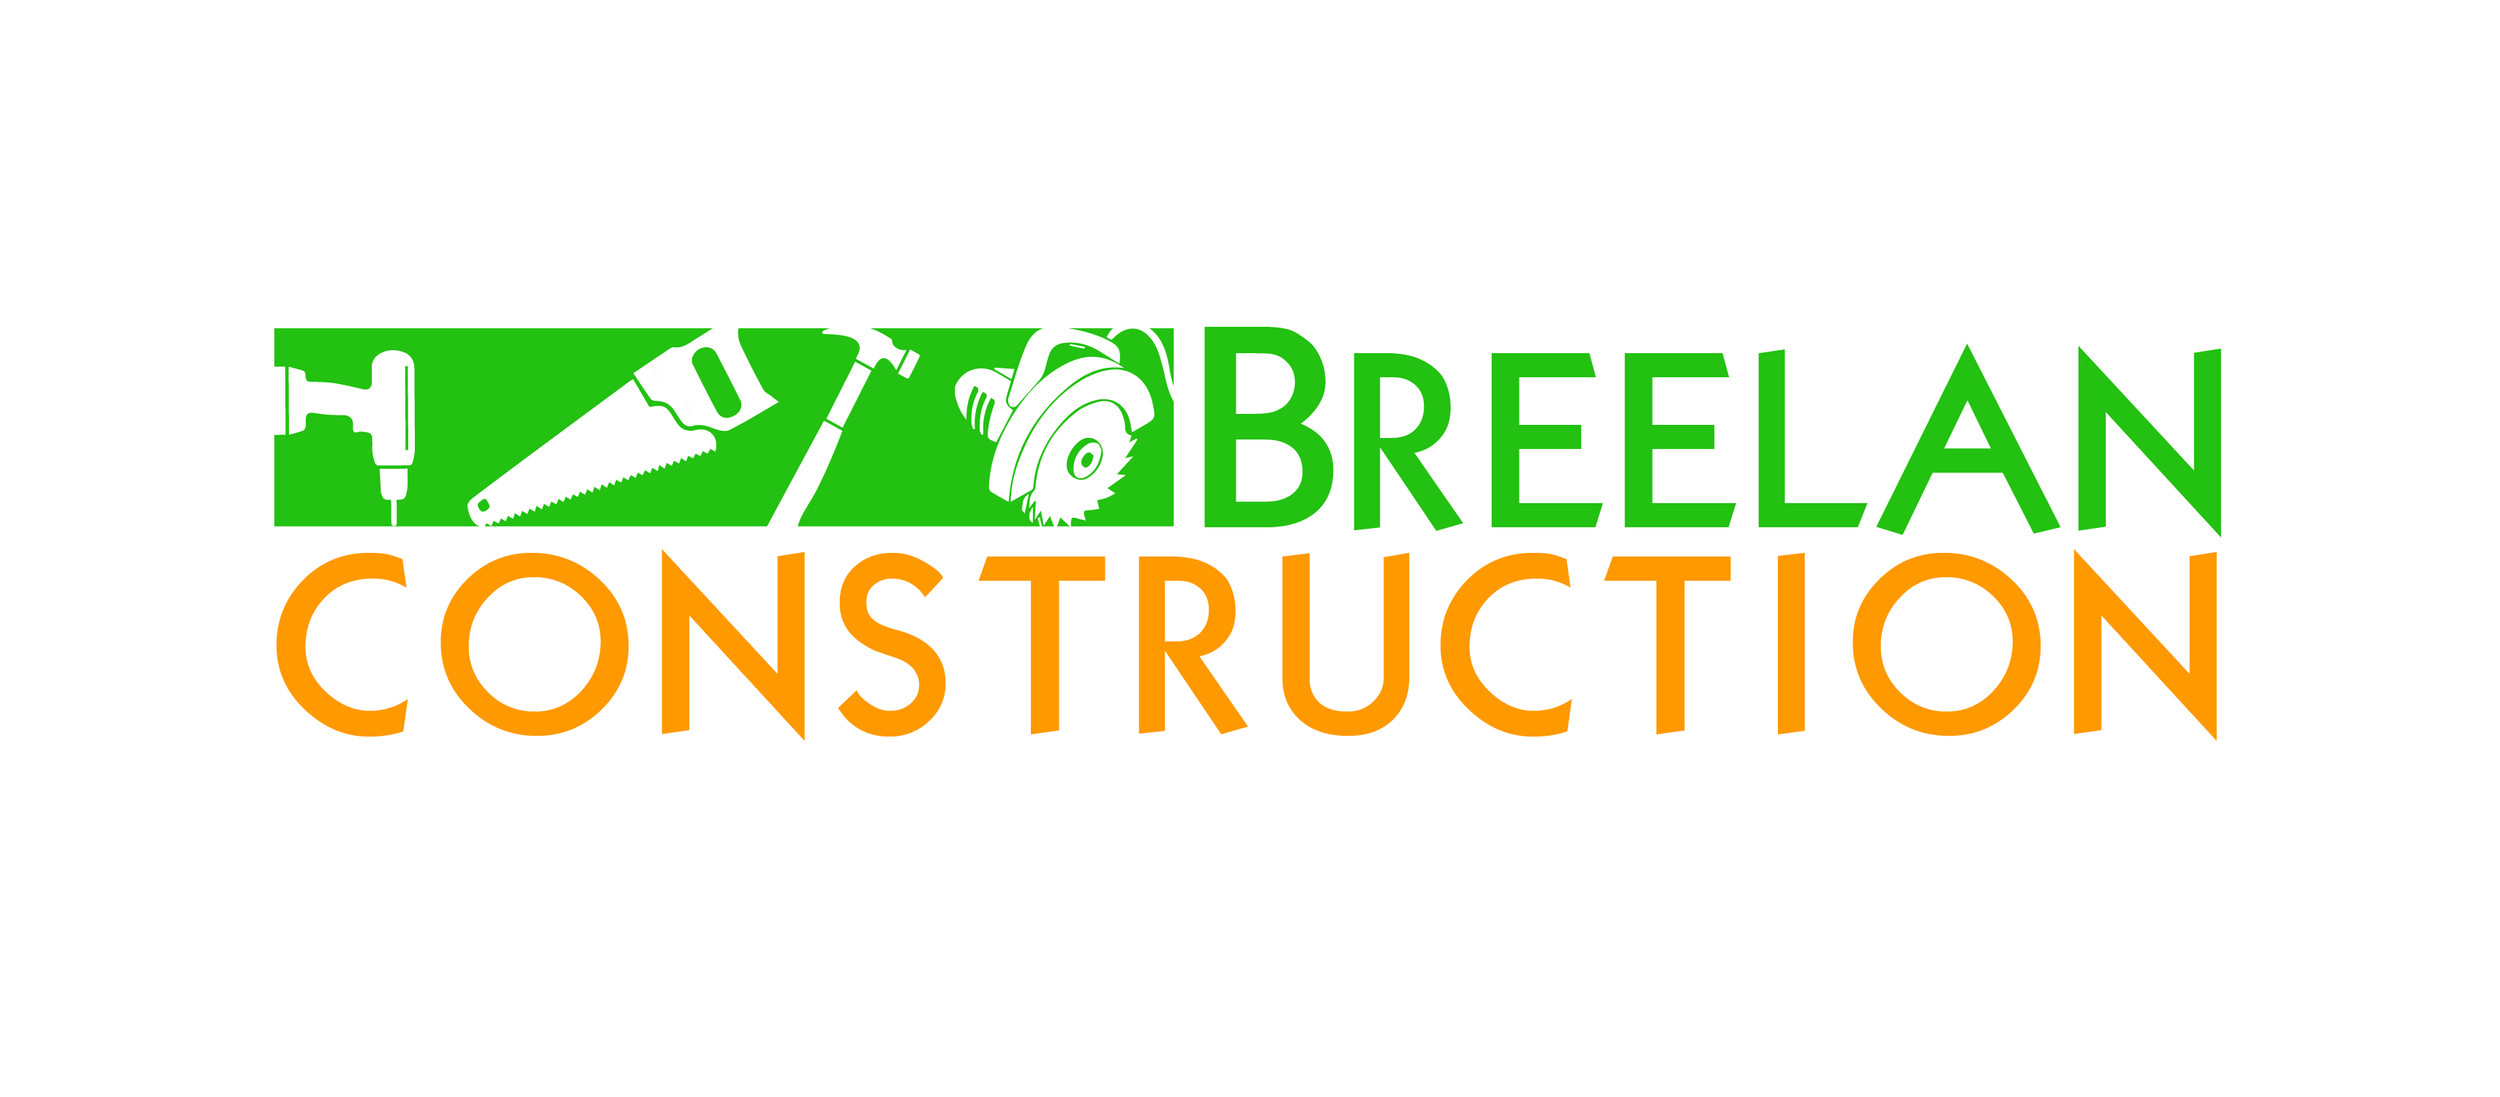 Breelan Construction Ltd.